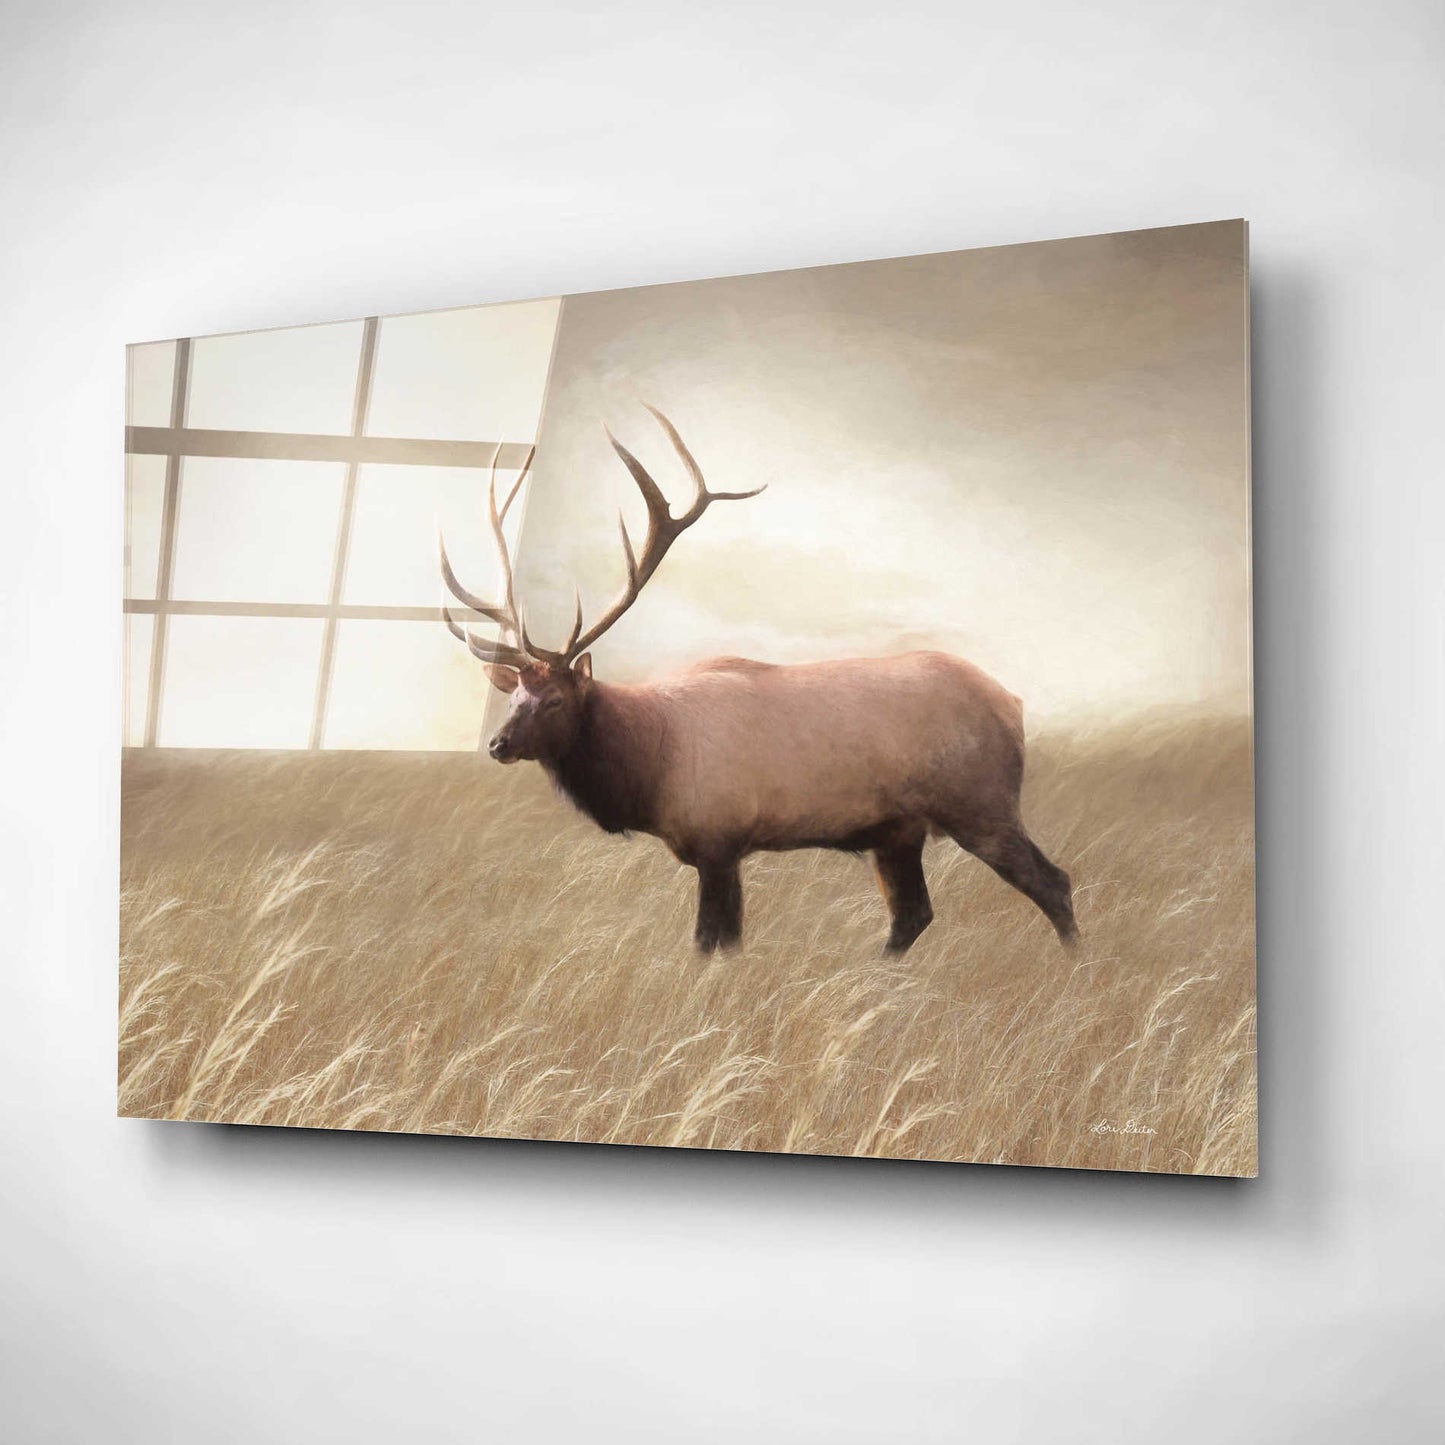 Epic Art 'Elk in the Field' by Lori Deiter, Acrylic Glass Wall Art,16x12